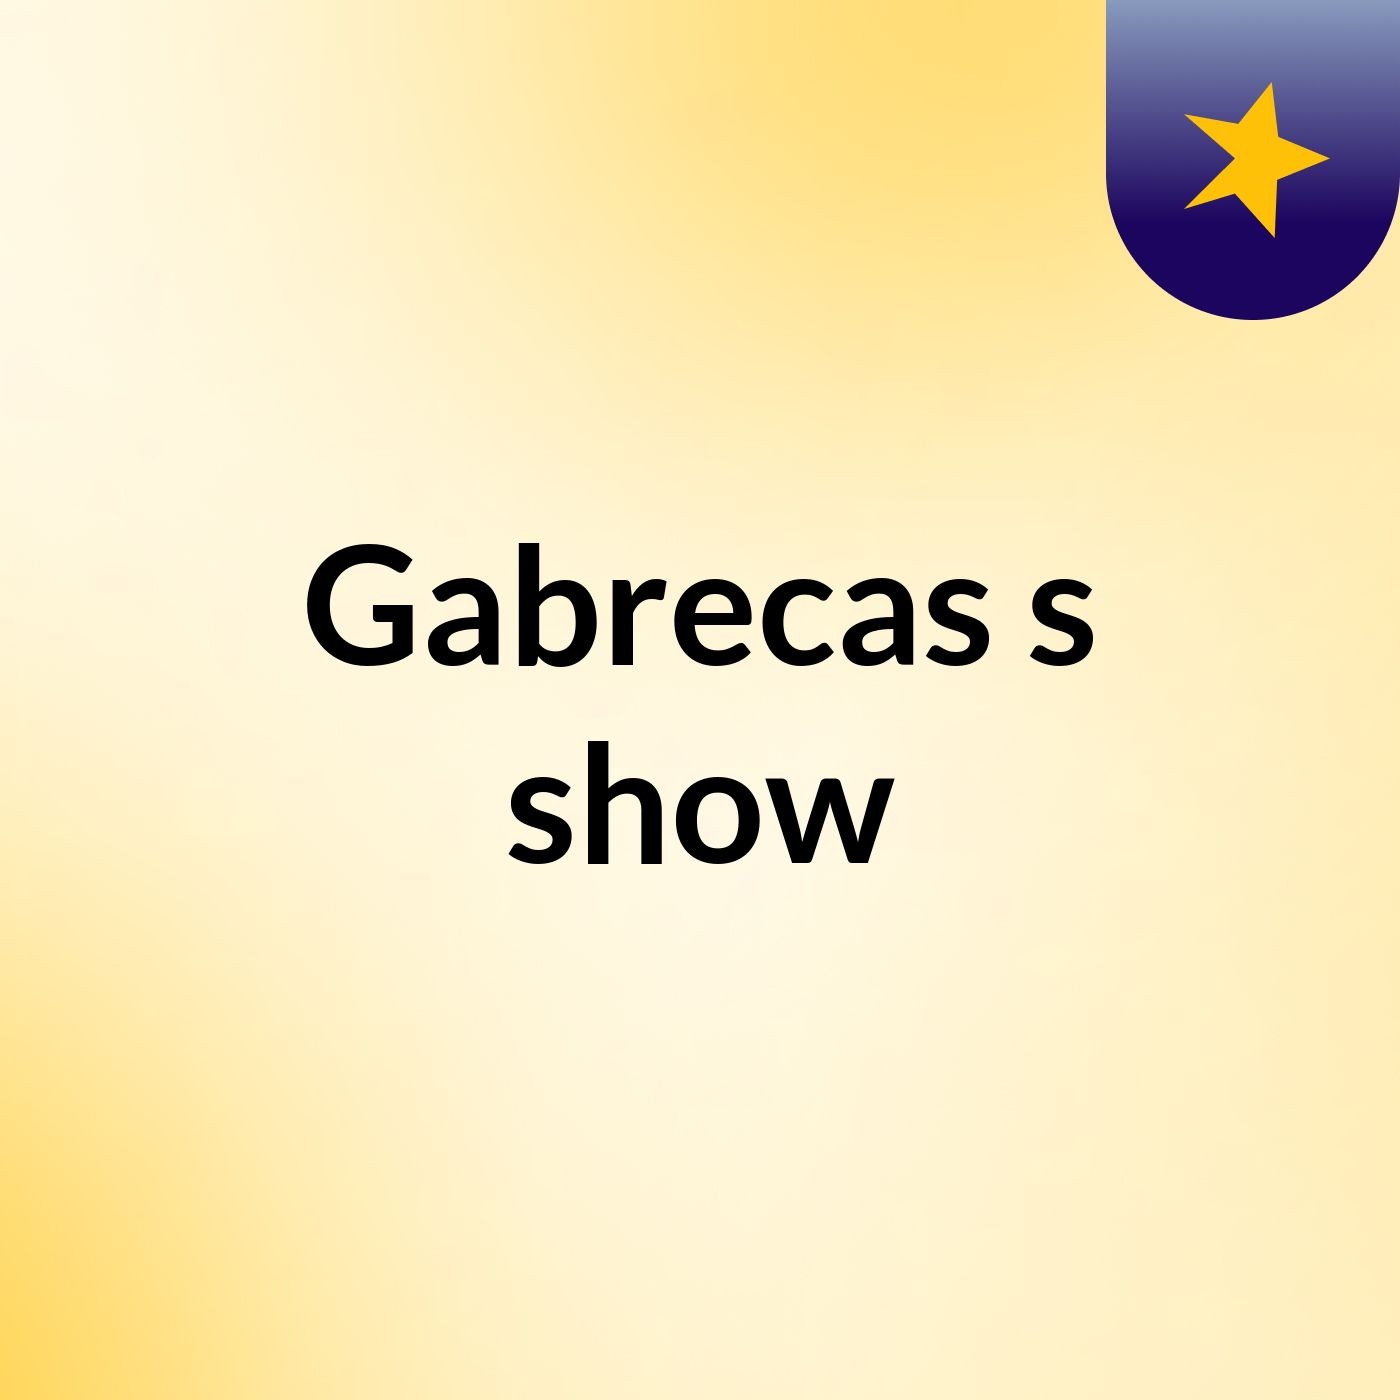 Gabrecas's show